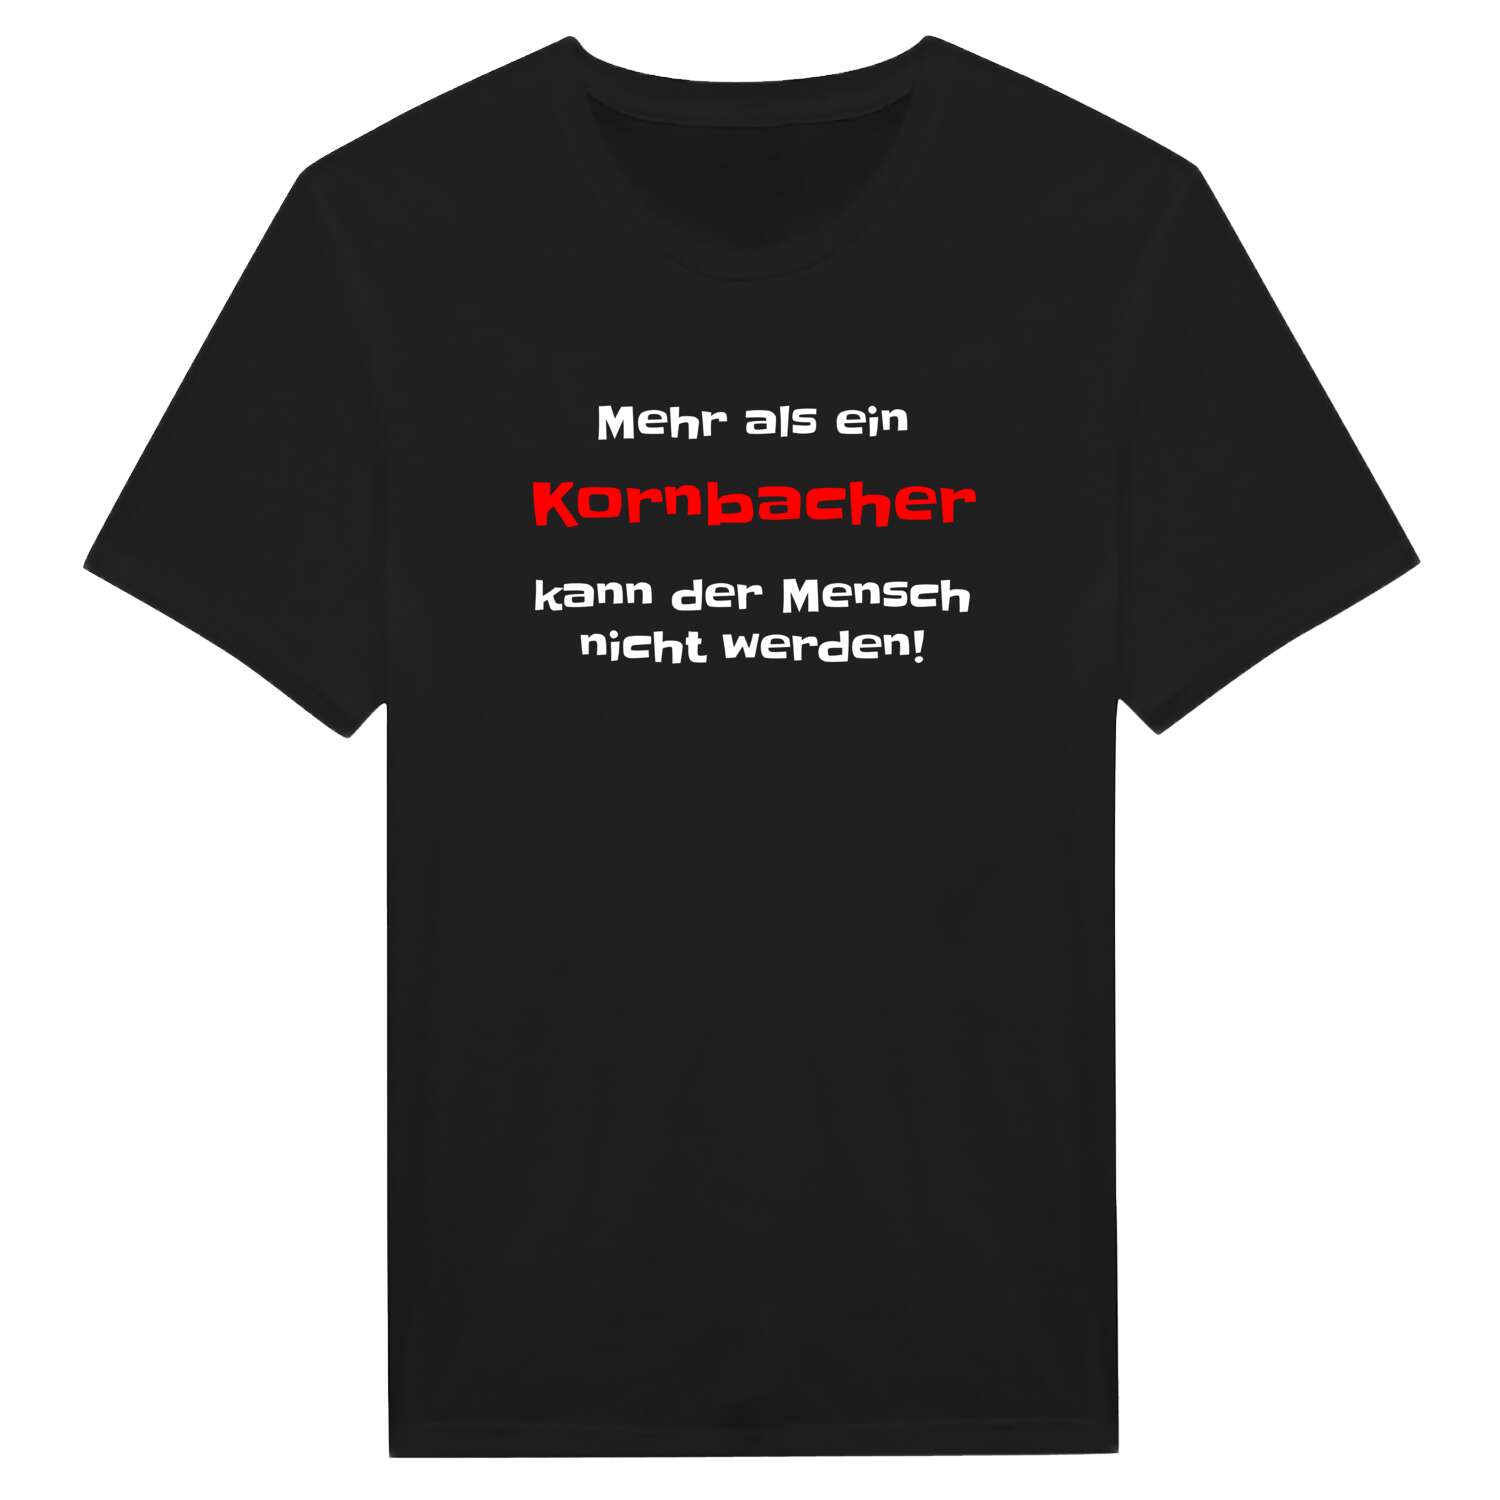 Kornbach T-Shirt »Mehr als ein«